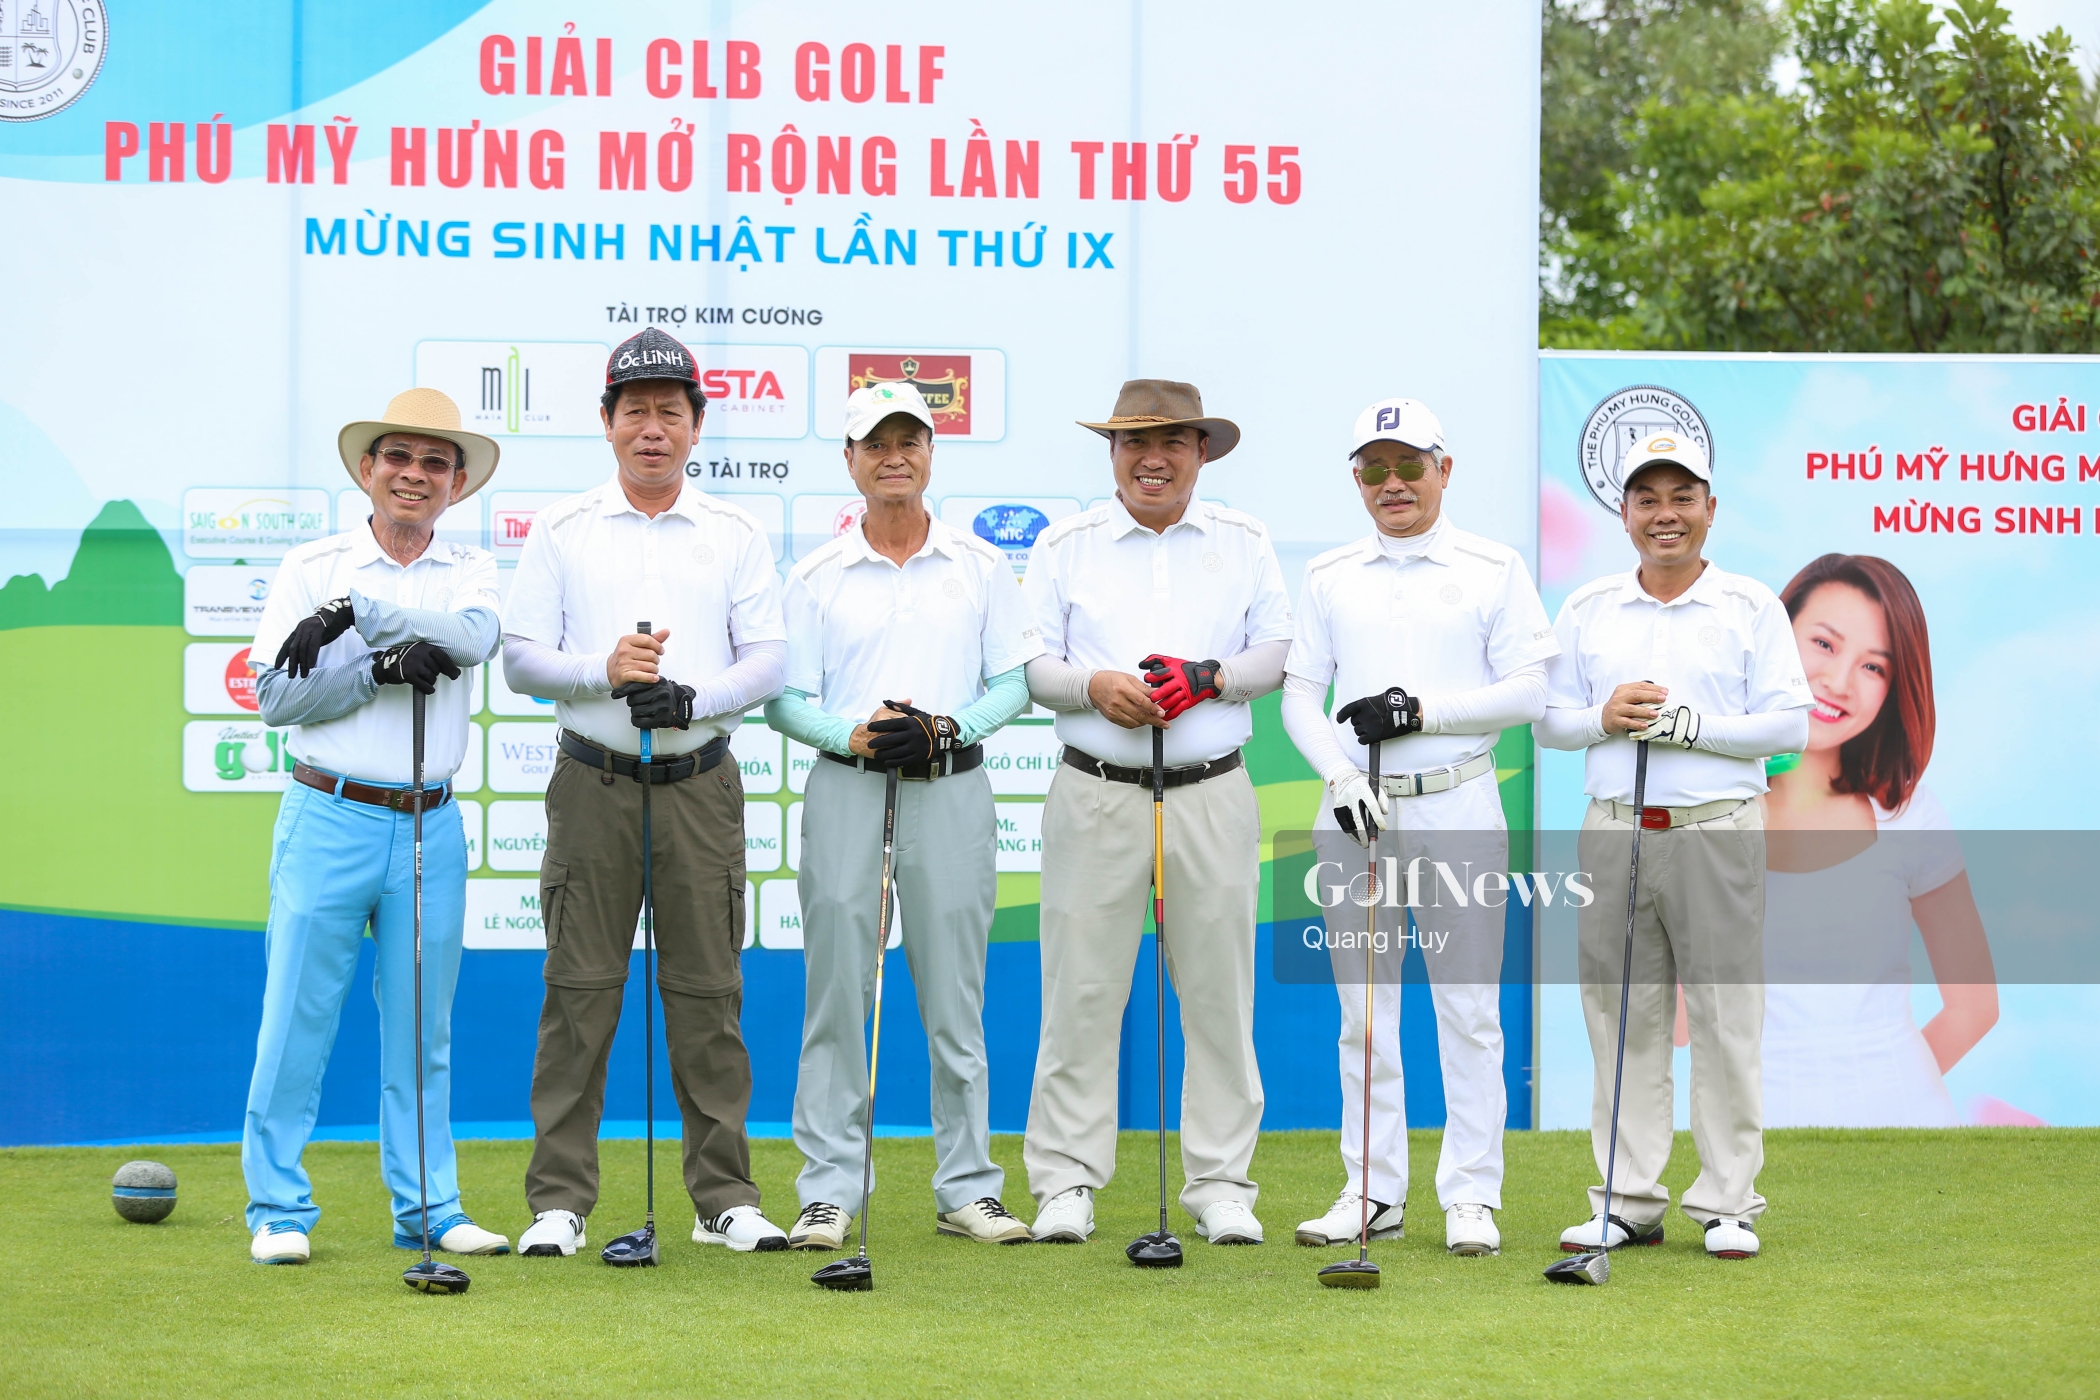 Giải CLB golf Phú Mỹ Hưng lần thứ 55: 9 năm một chặng đường phát triển